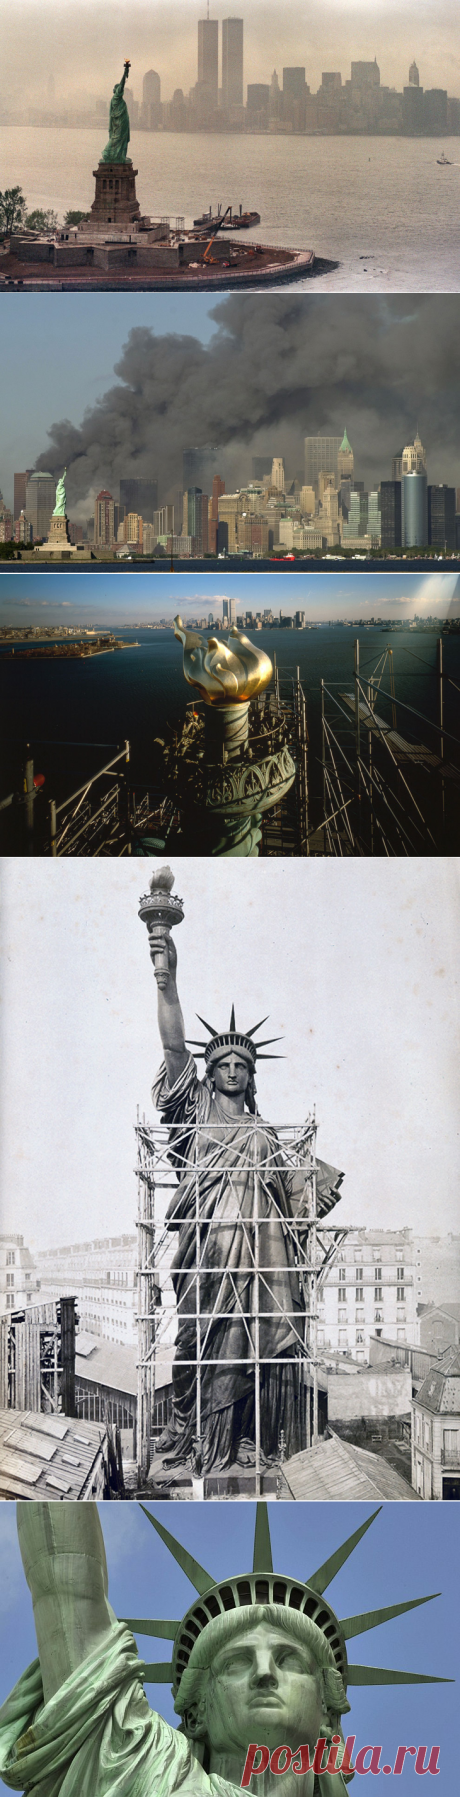 История Статуи Свободы | Все о туризме и отдыхе